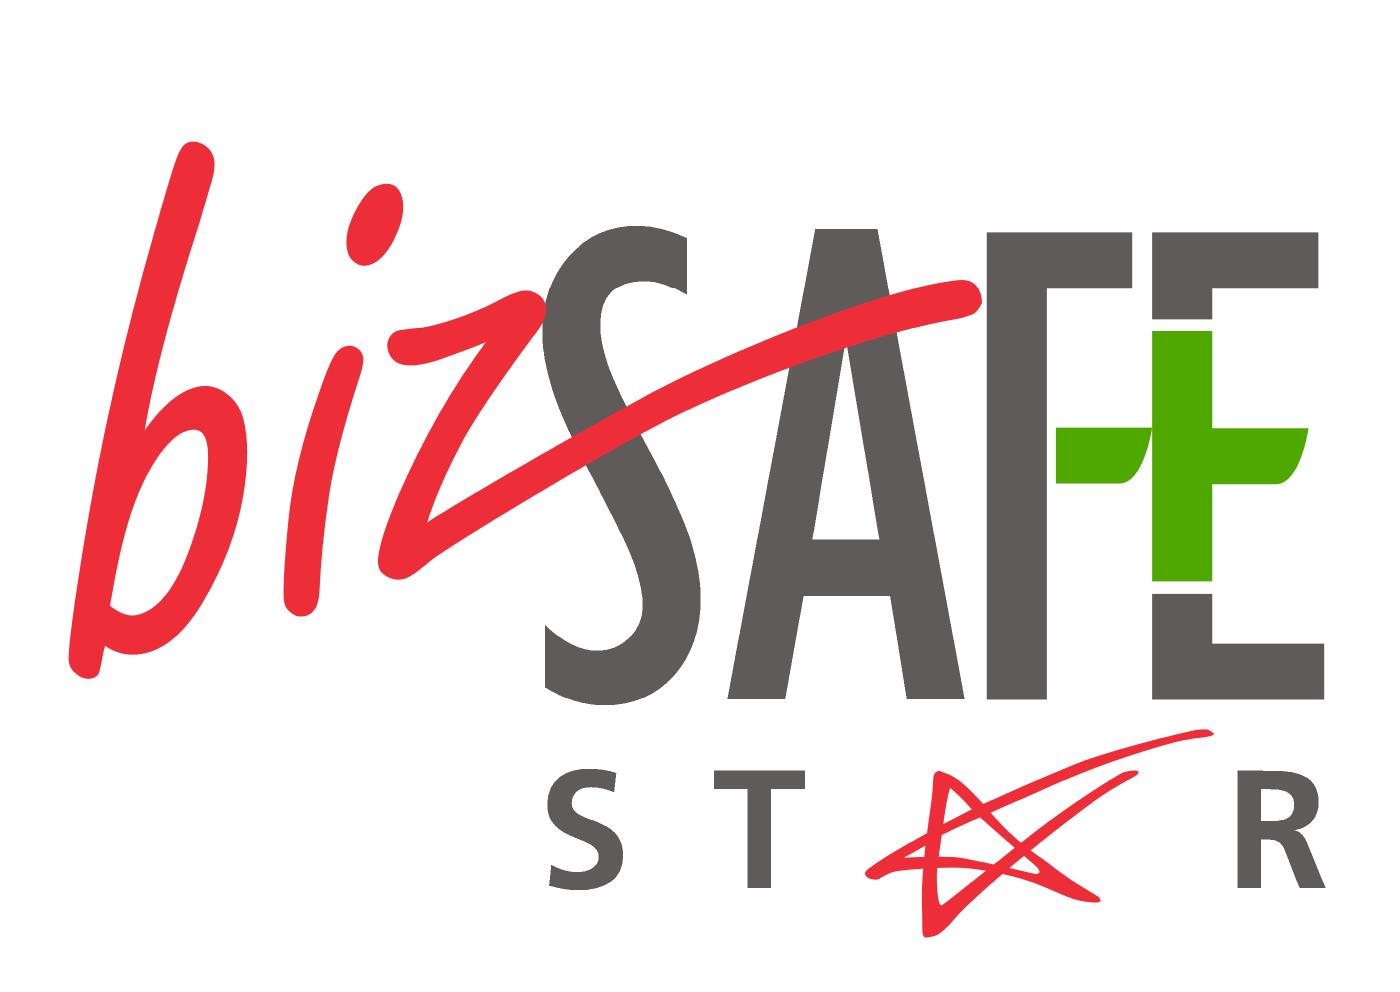 BizSafe Star for Racking